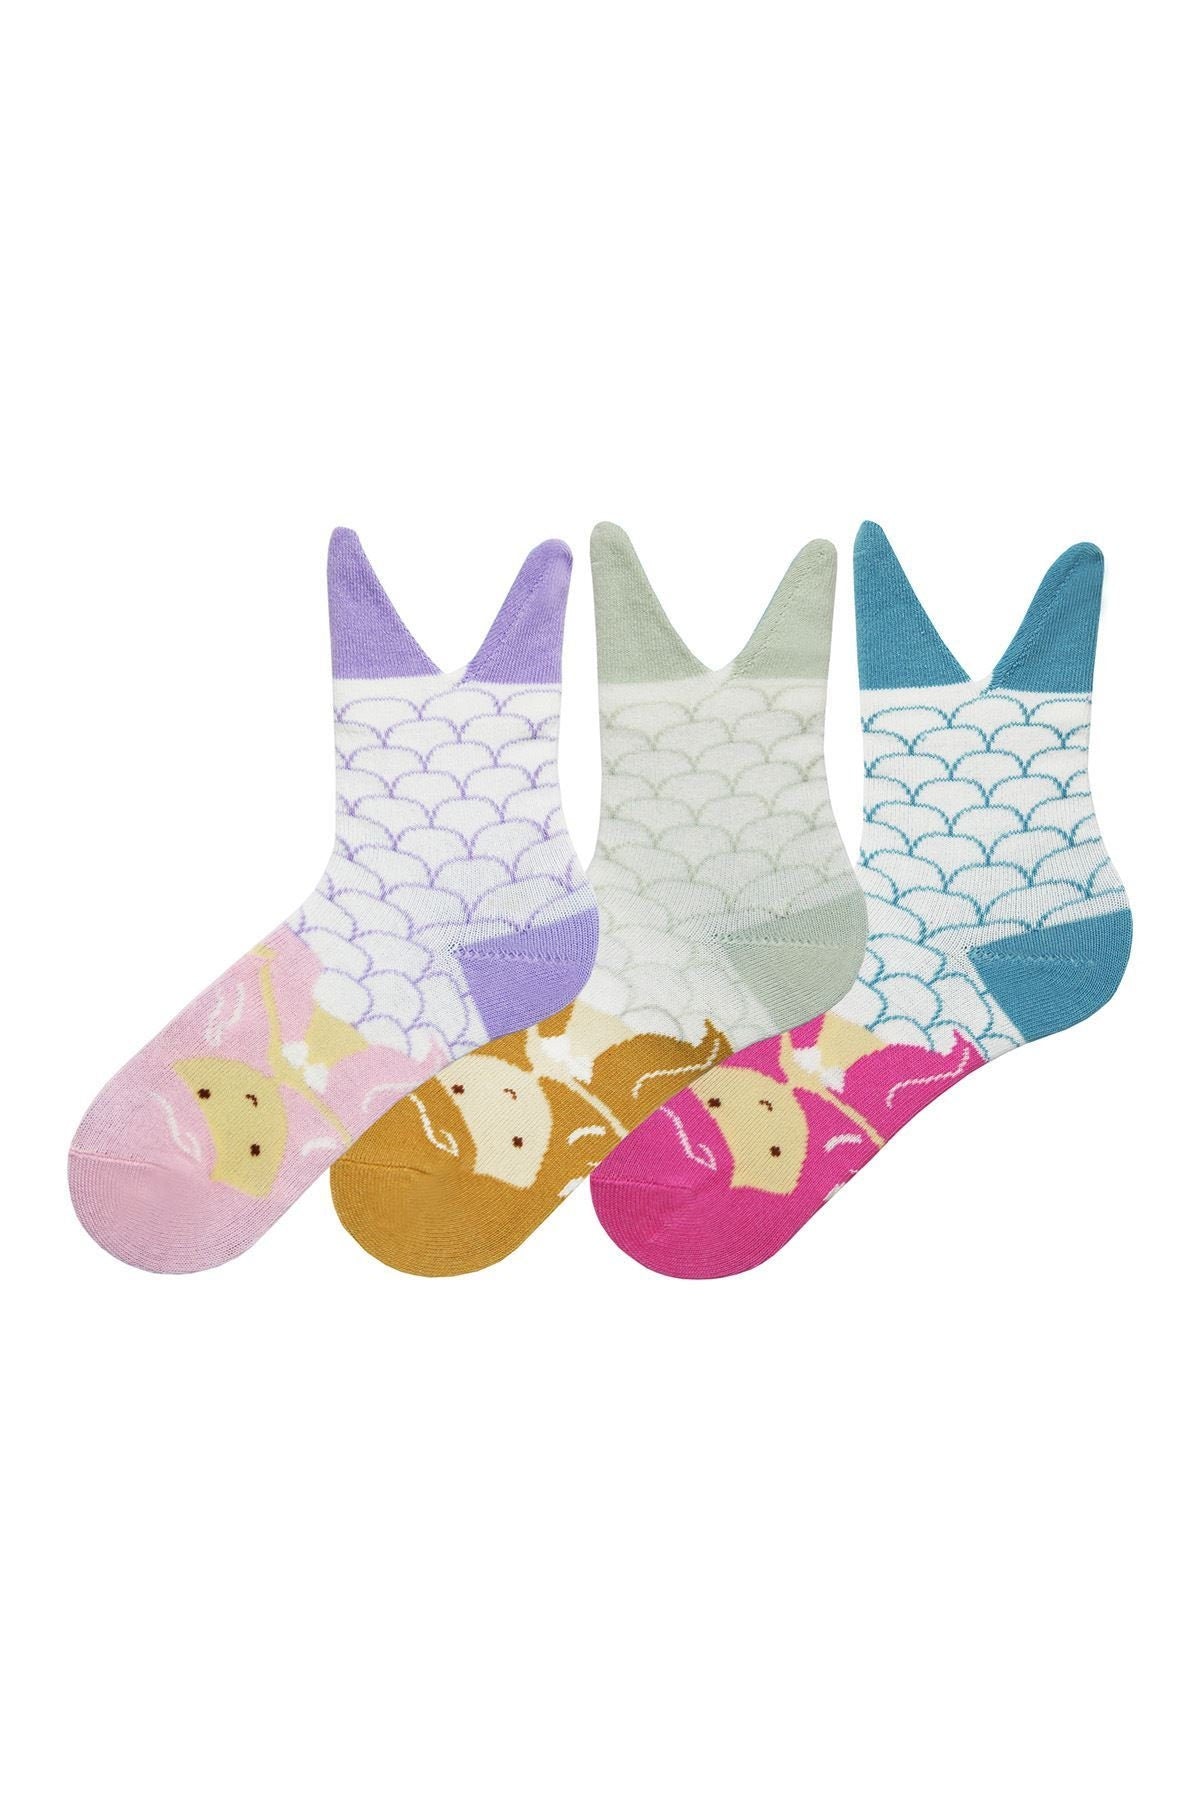 Advent Calendar For Kids, 12 Days Of Girl Socks, Crocodile, Penguin, Fish, Dinosaur, Mermaid, Frog, Fox, Unicorn Pattern Sock, 3D Kids Socks